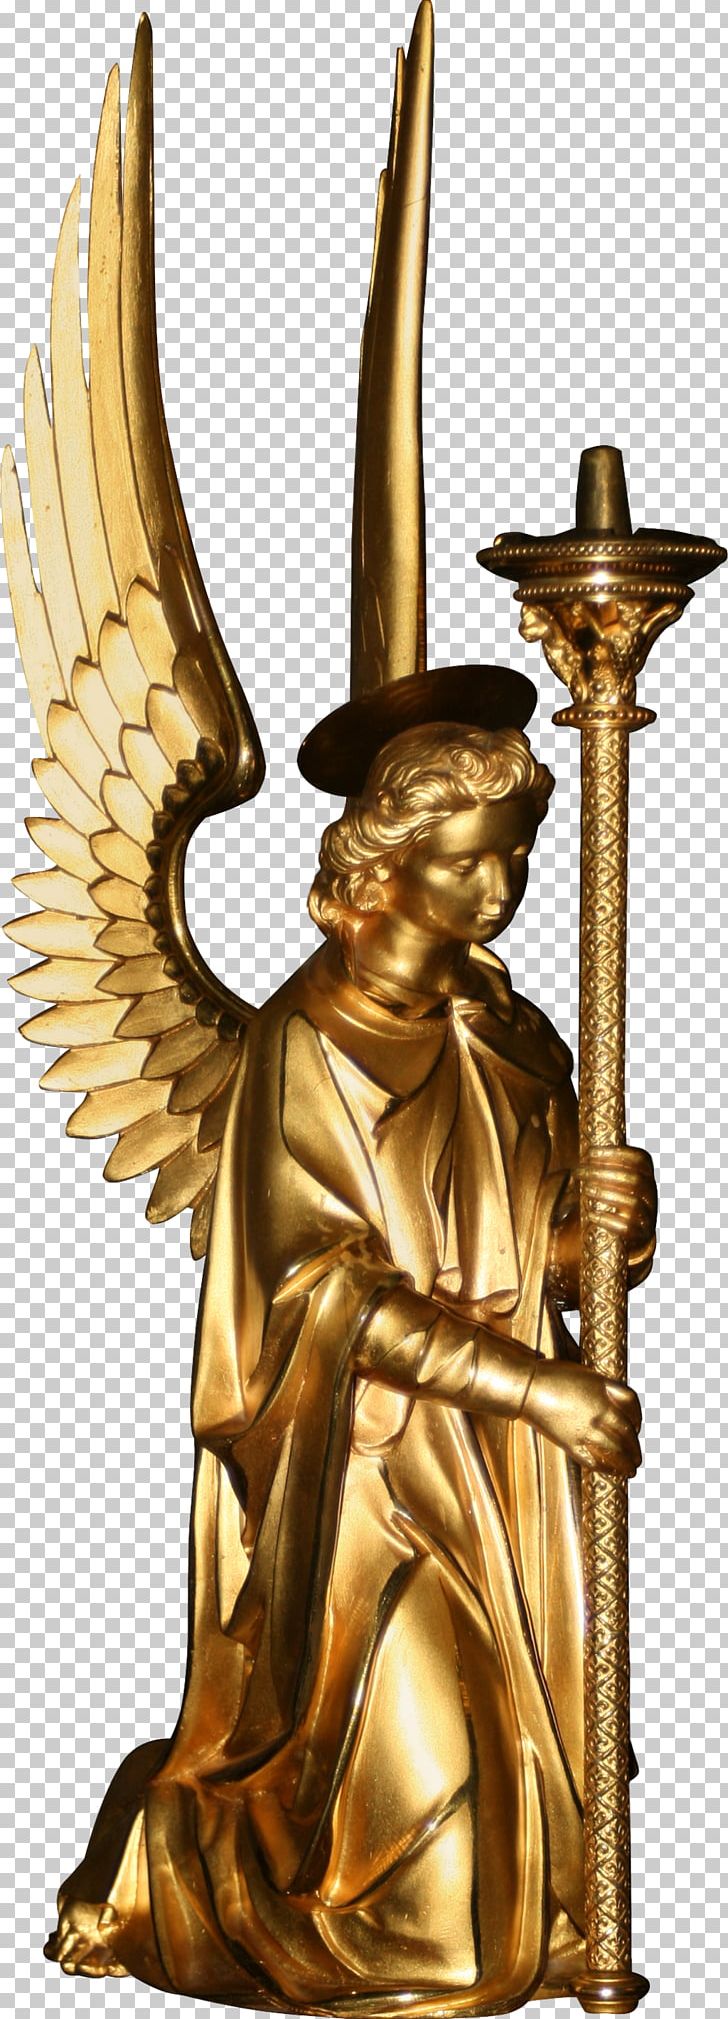 Bronze Sculpture Art Statue PNG, Clipart, Angel, Art, Brass, Bronze, Bronze Sculpture Free PNG Download